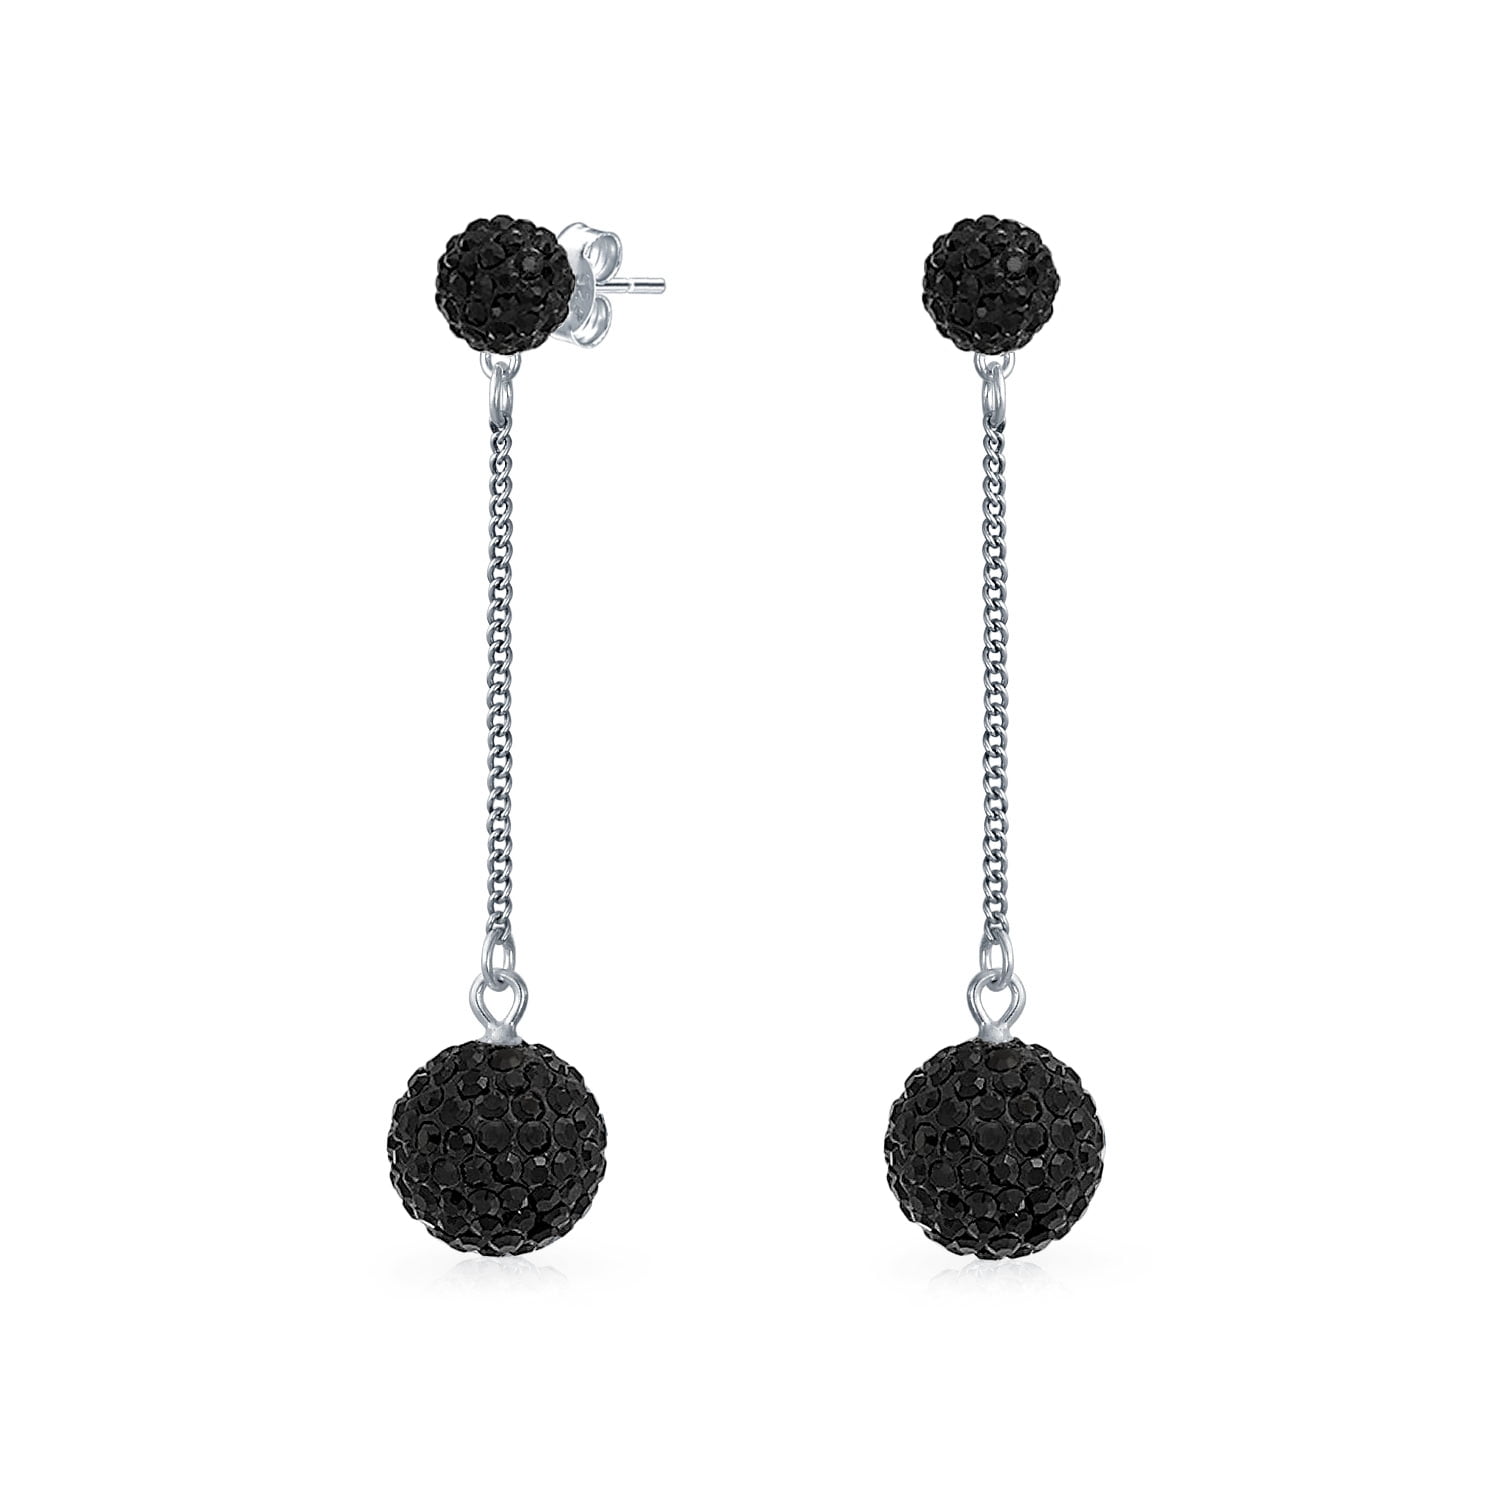 D60 Silvertone Black Crystal Speckled Gray Bead Pierced Earrings 